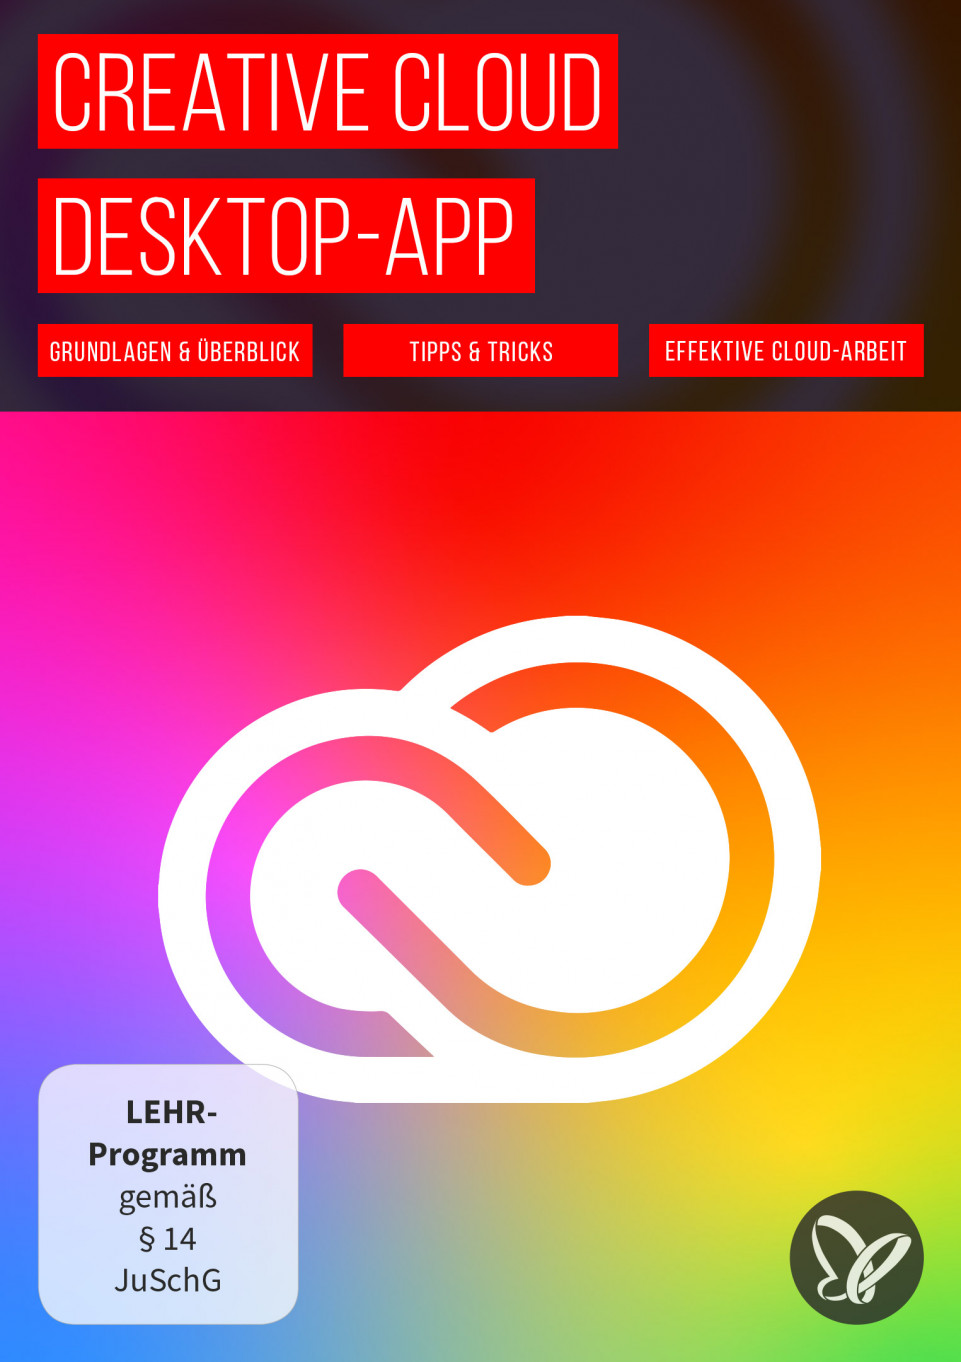 Creative Cloud Desktop-App: Tutorial zu hilfreichen Funktionen